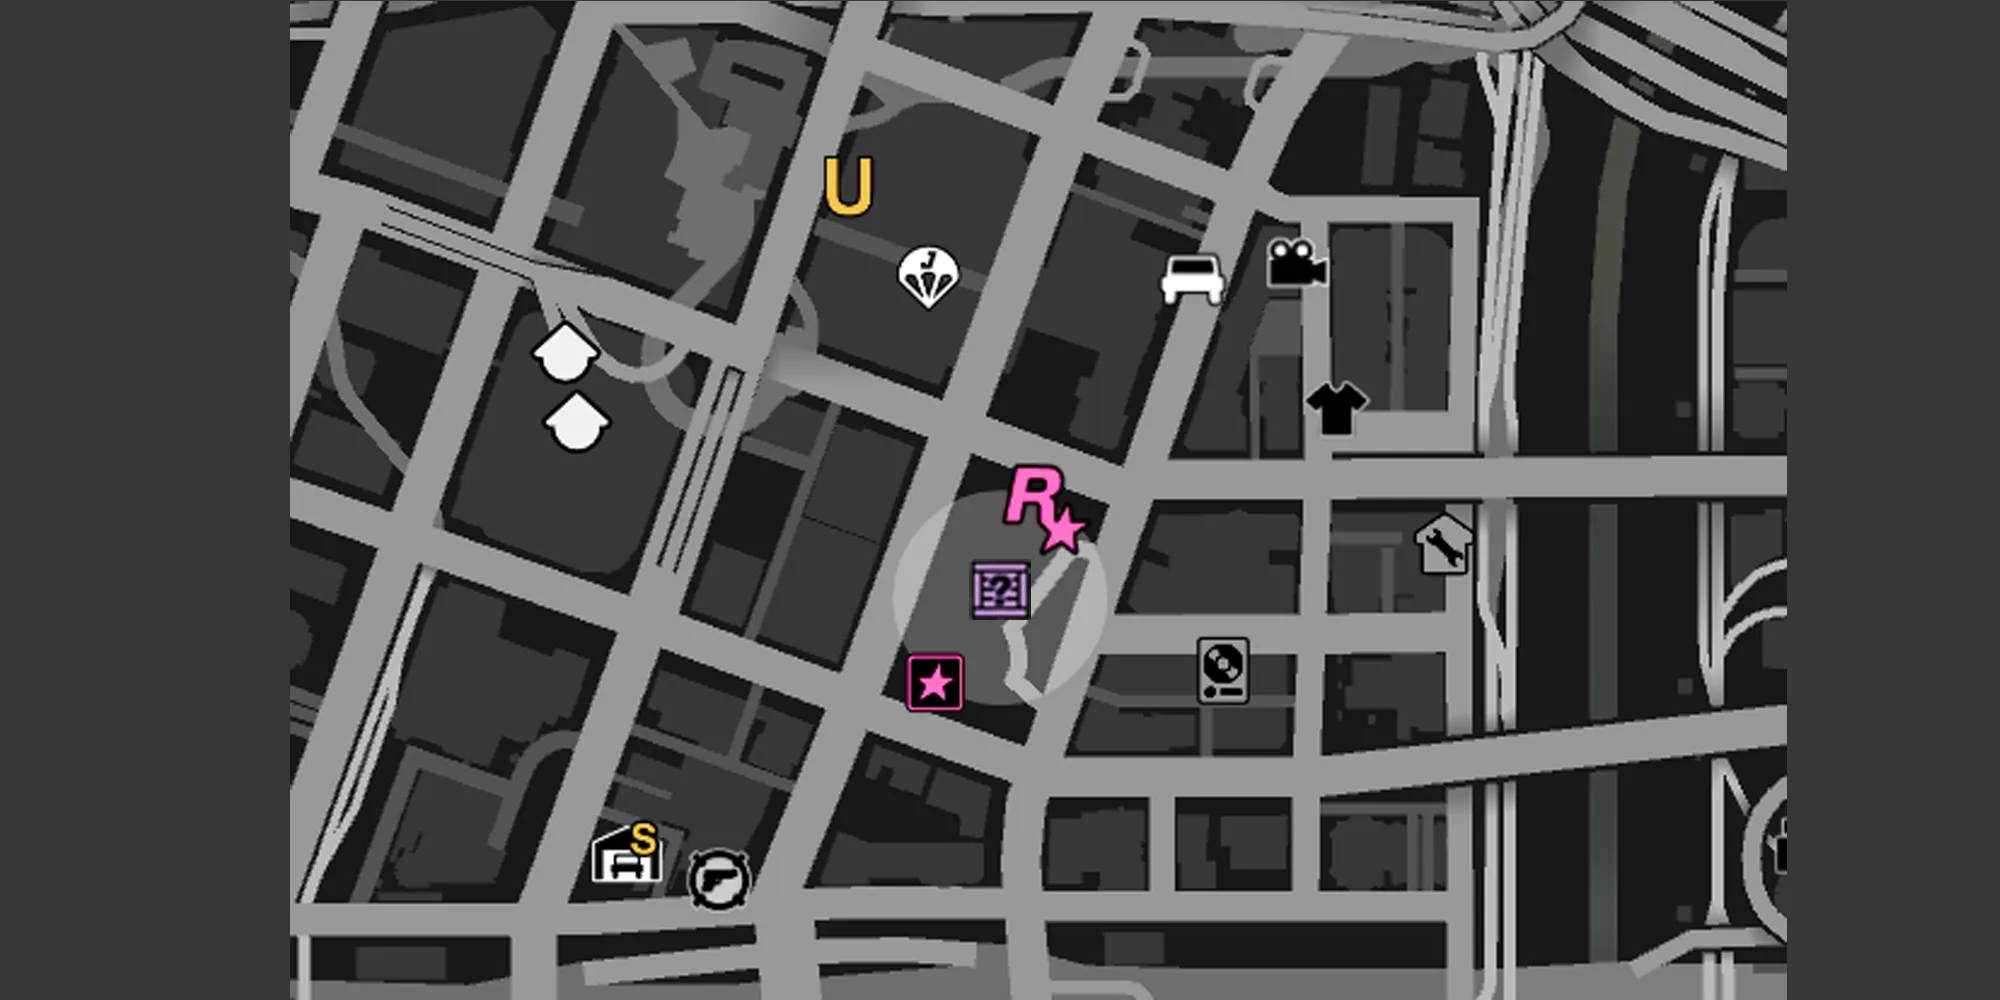 画像は、GTA Onlineマップ上のレギオンスクエアを示しており、グレーの円と紫のGのキャッシュの箱のアイコンが表示されています。